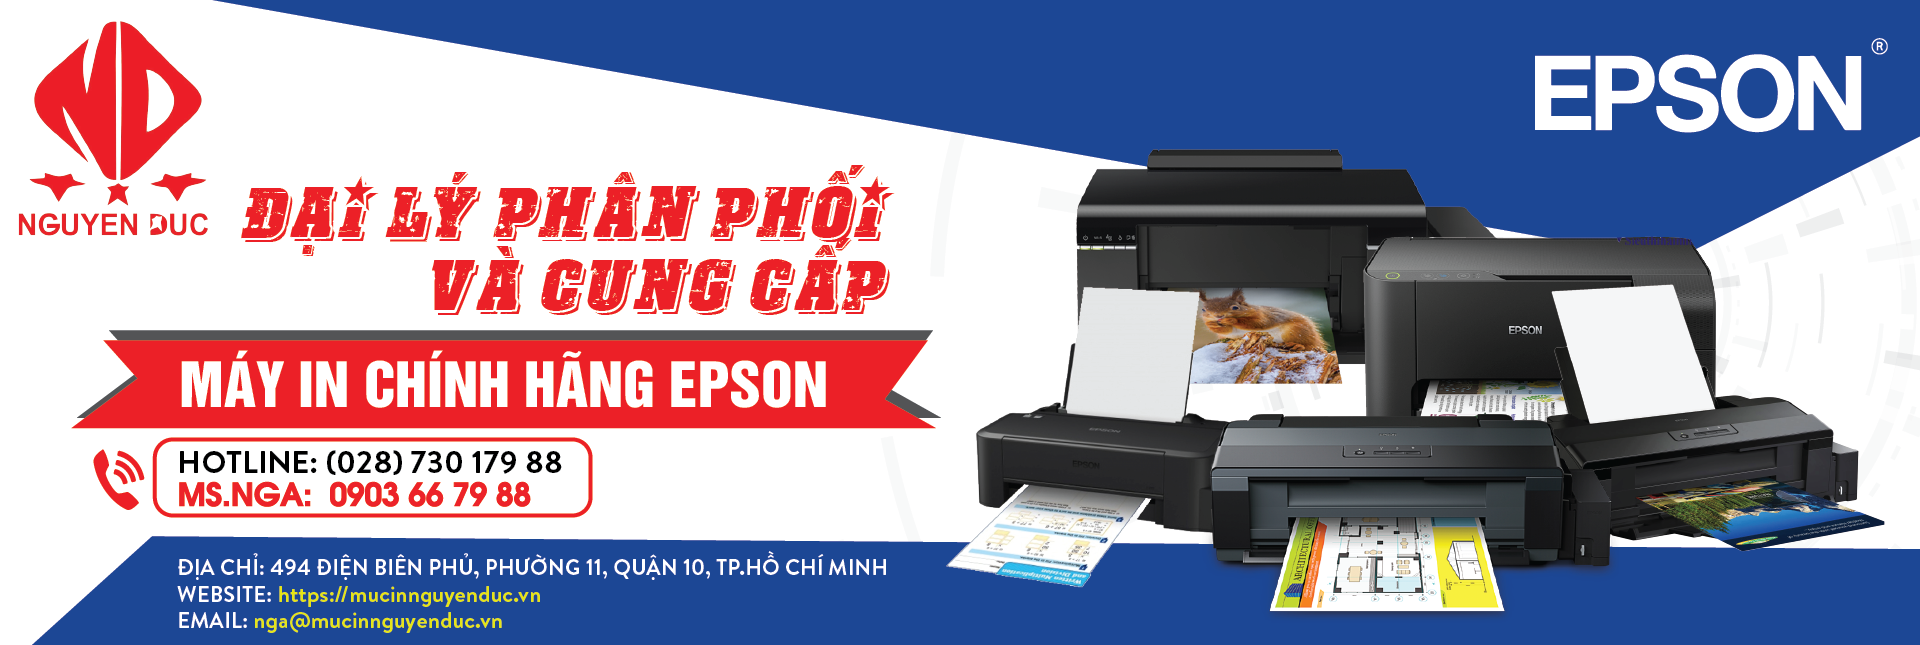 Đại lí phân phối máy in epson LQ-310 - chính hãng, giao hàng tại tỉnh Thái Bình